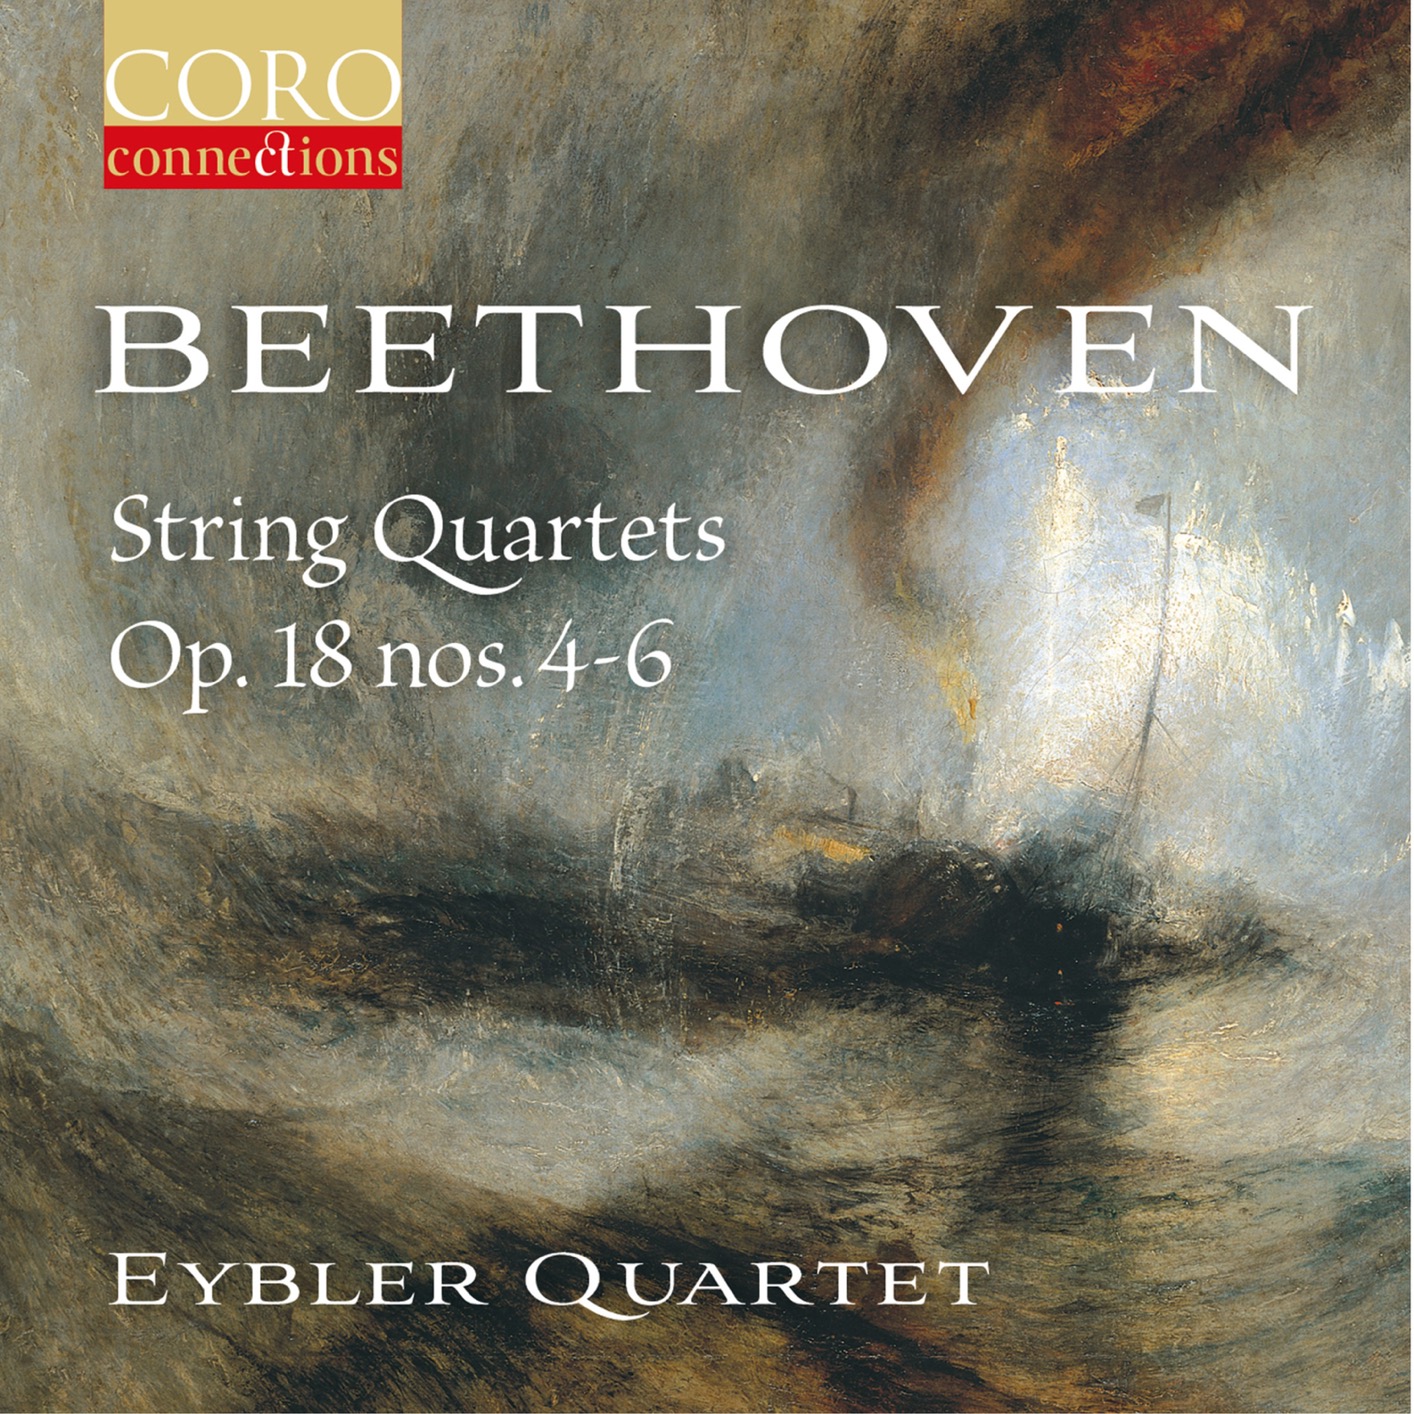 Eybler Quartet – Beethoven String Quartets Op. 18, Nos. 4-6 (2019) [FLAC 24bit/96kHz]